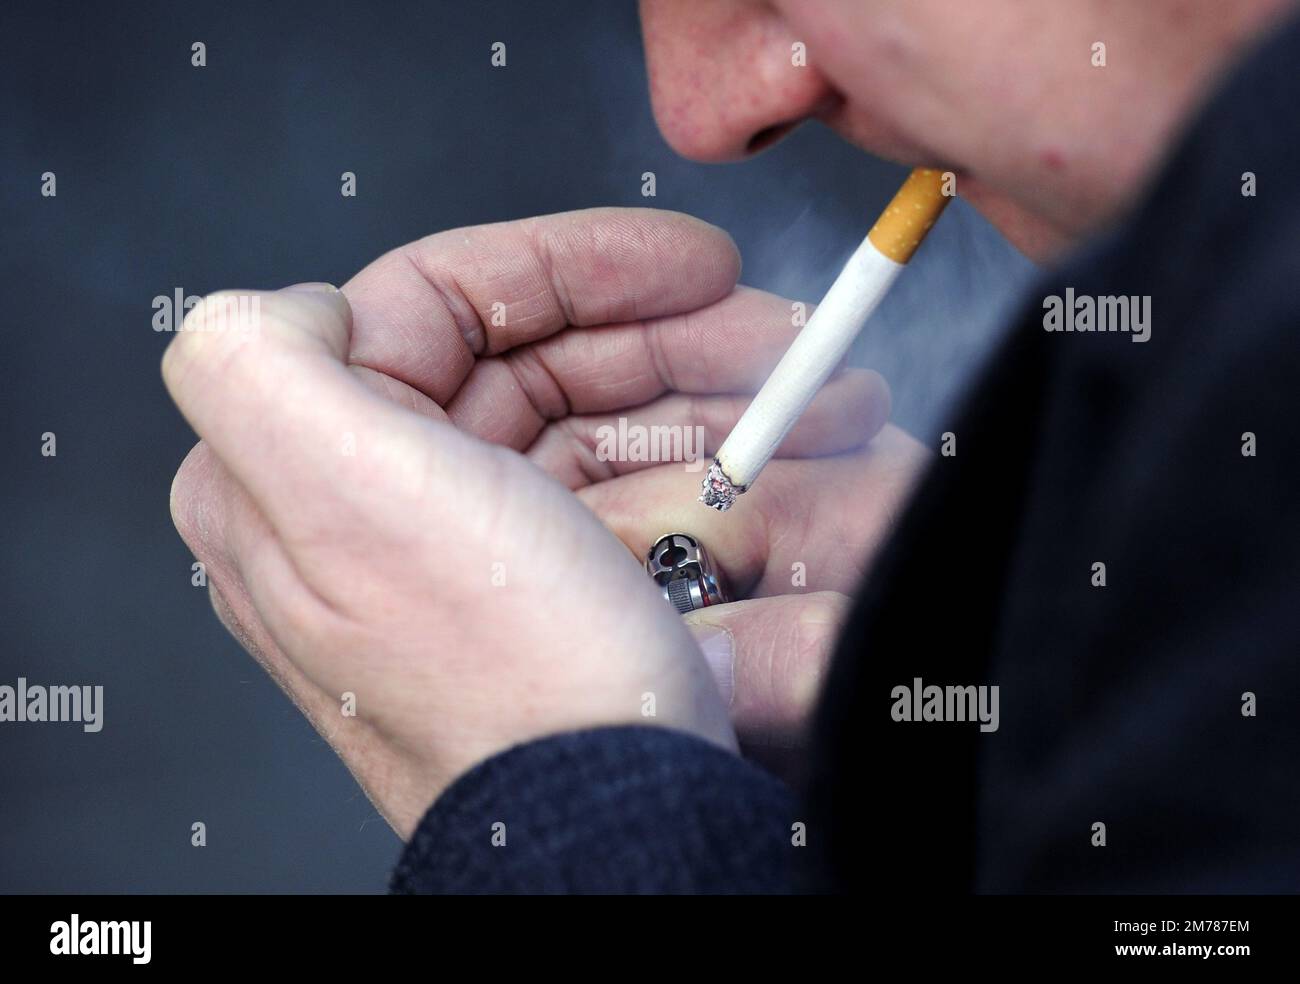 PHOTO POSÉE PAR UN MODÈLE photo du dossier datée du 12/03/13 d'un homme qui fume une cigarette. La vente de cigarettes pourrait être éliminée progressivement dans le cadre des propositions du travail visant à améliorer la santé publique et à alléger la pression sur le NHS. le secrétaire à la Santé de l'ombre, Wes Streeting, a déclaré que le parti se consultera sur un ensemble de mesures, y compris une interdiction progressive du tabac de style néo-zélandais. Date de publication : dimanche 8 janvier 2023. Banque D'Images